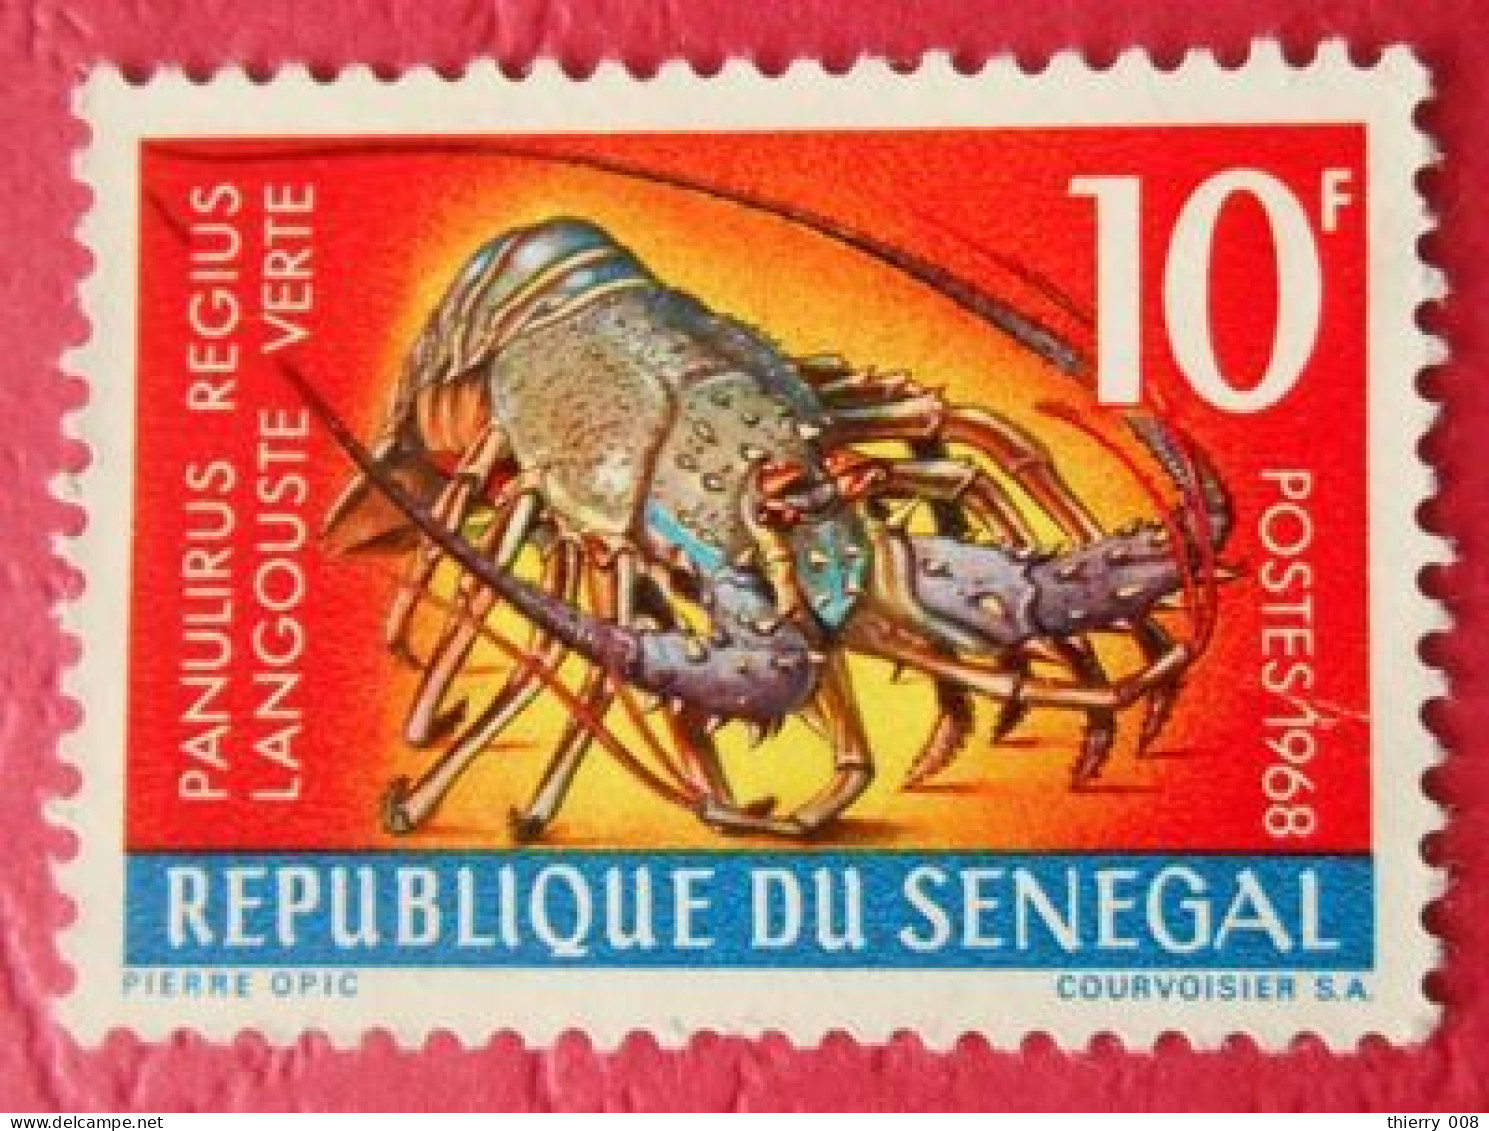 42 Sénégal Langouste Verte - Crustaceans